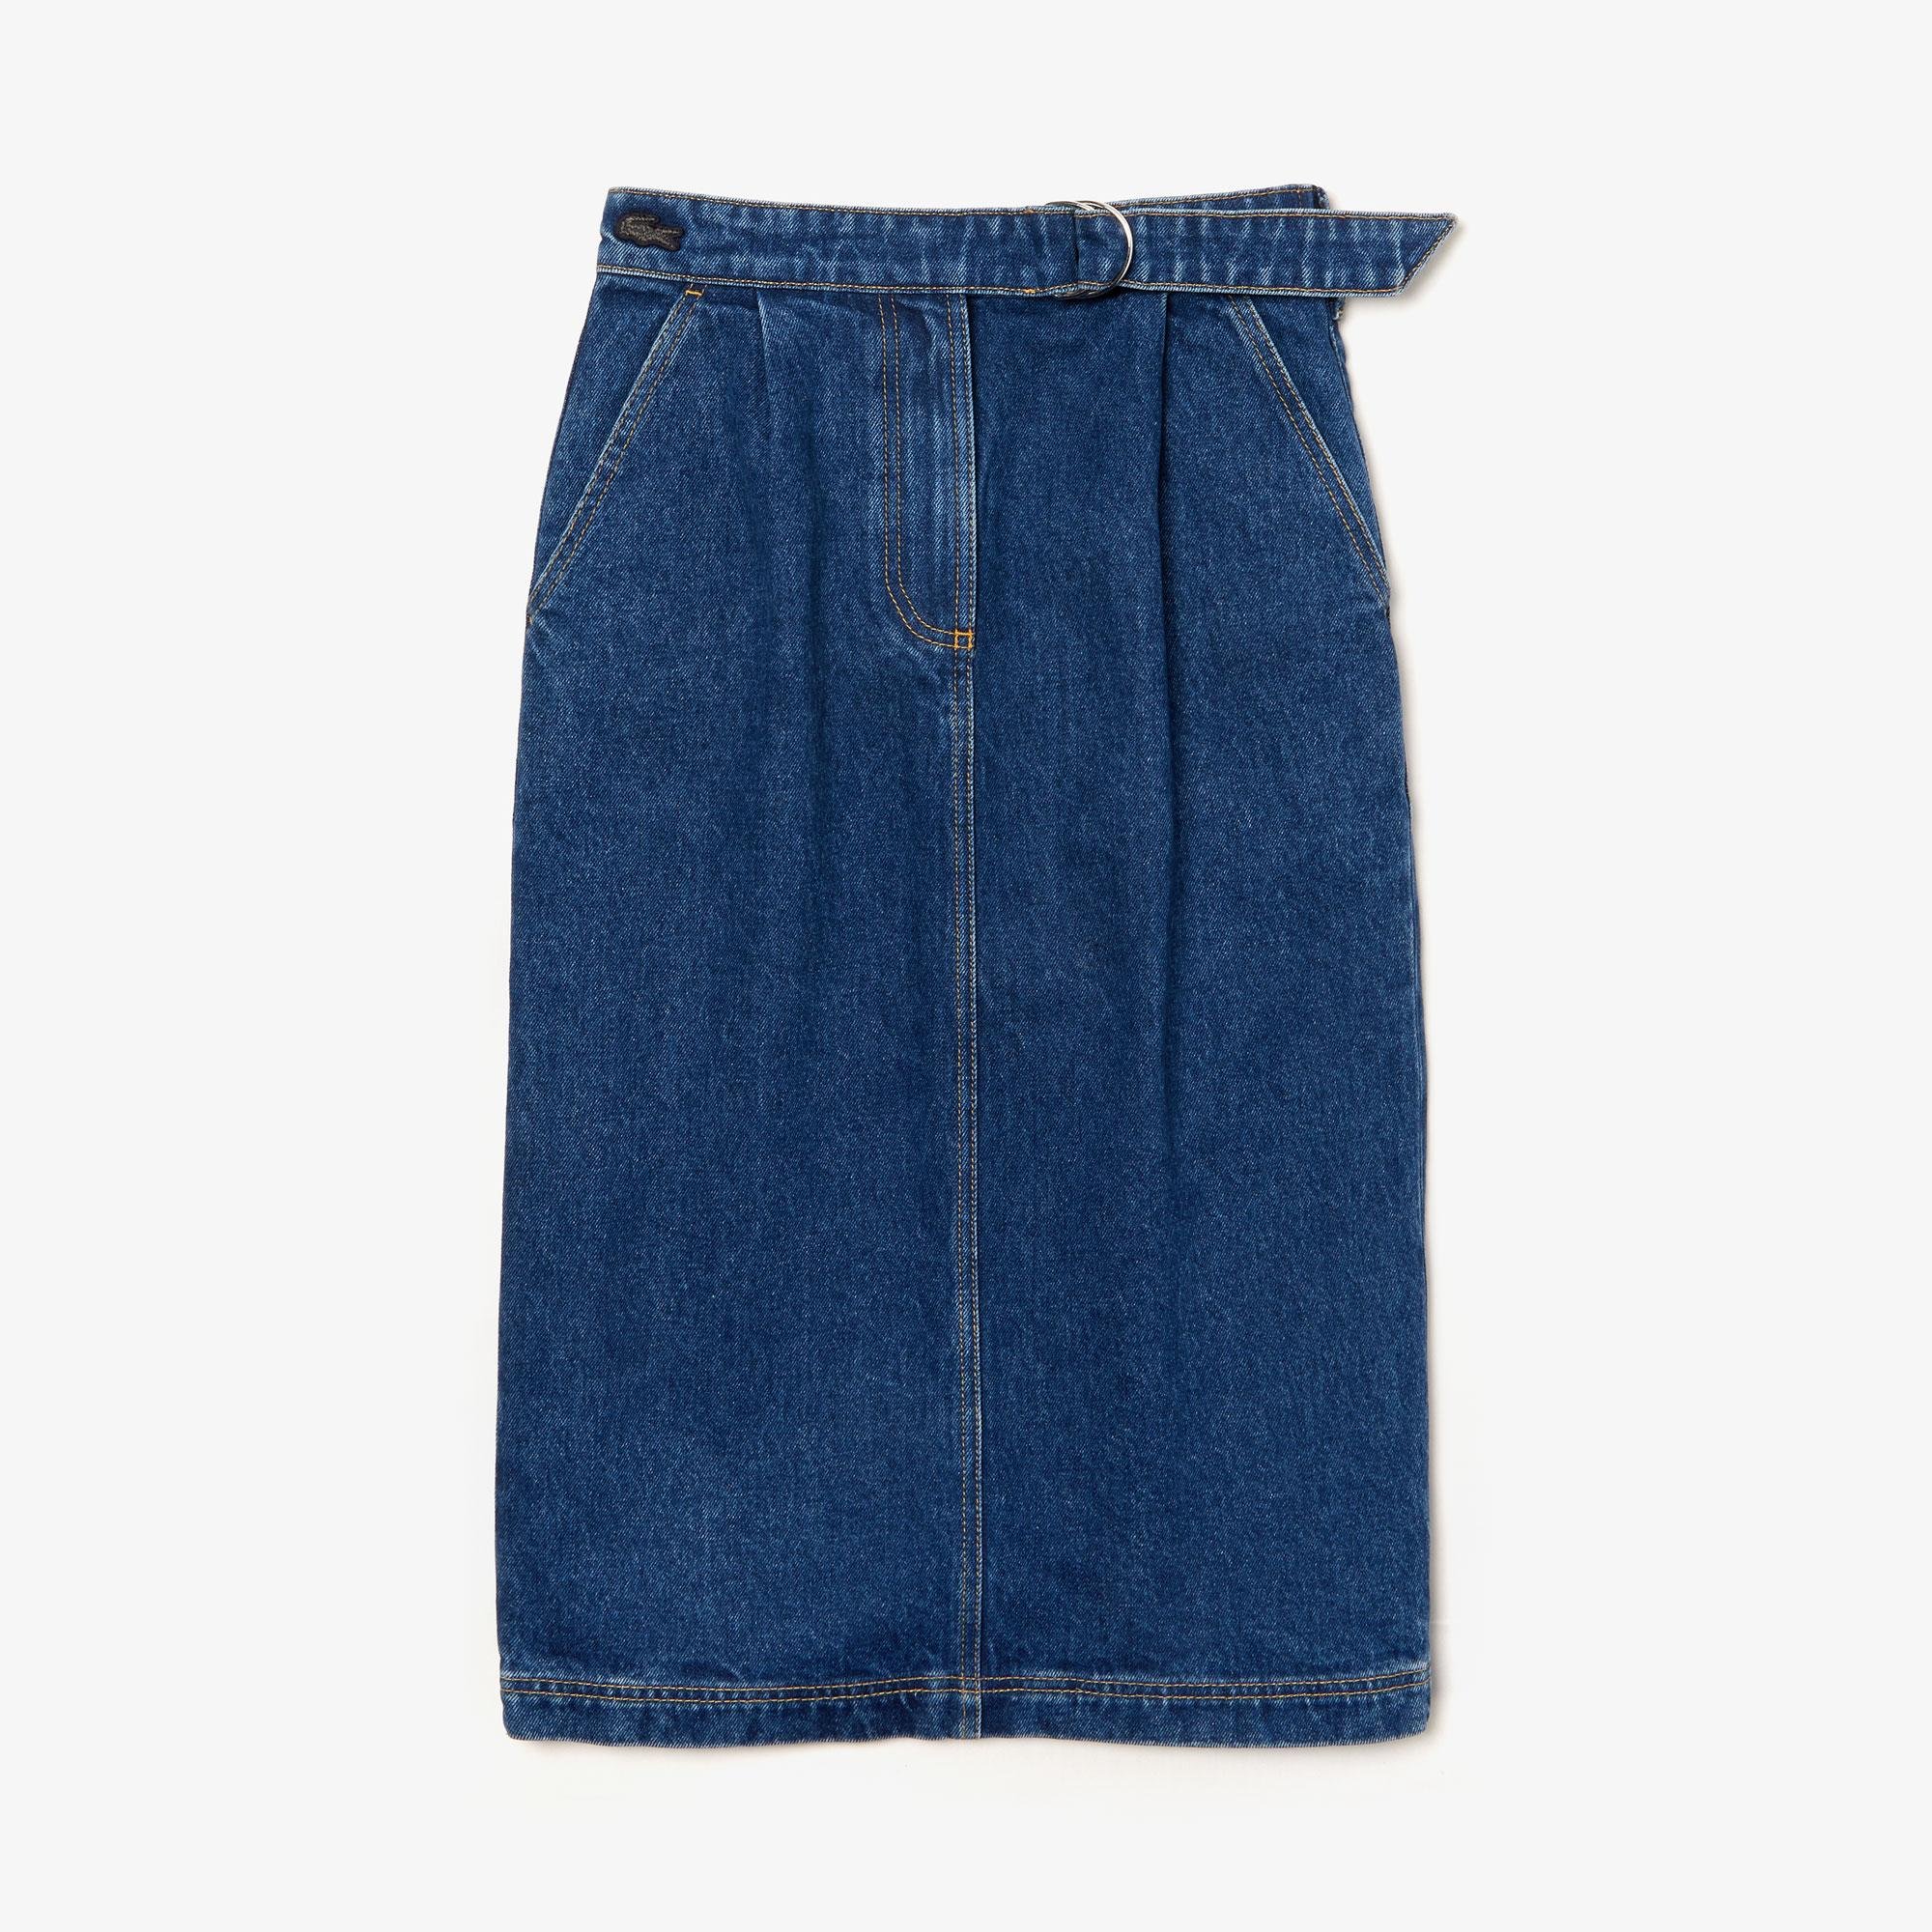 Lacoste Women's Straight Mid-Length Denim Skirt